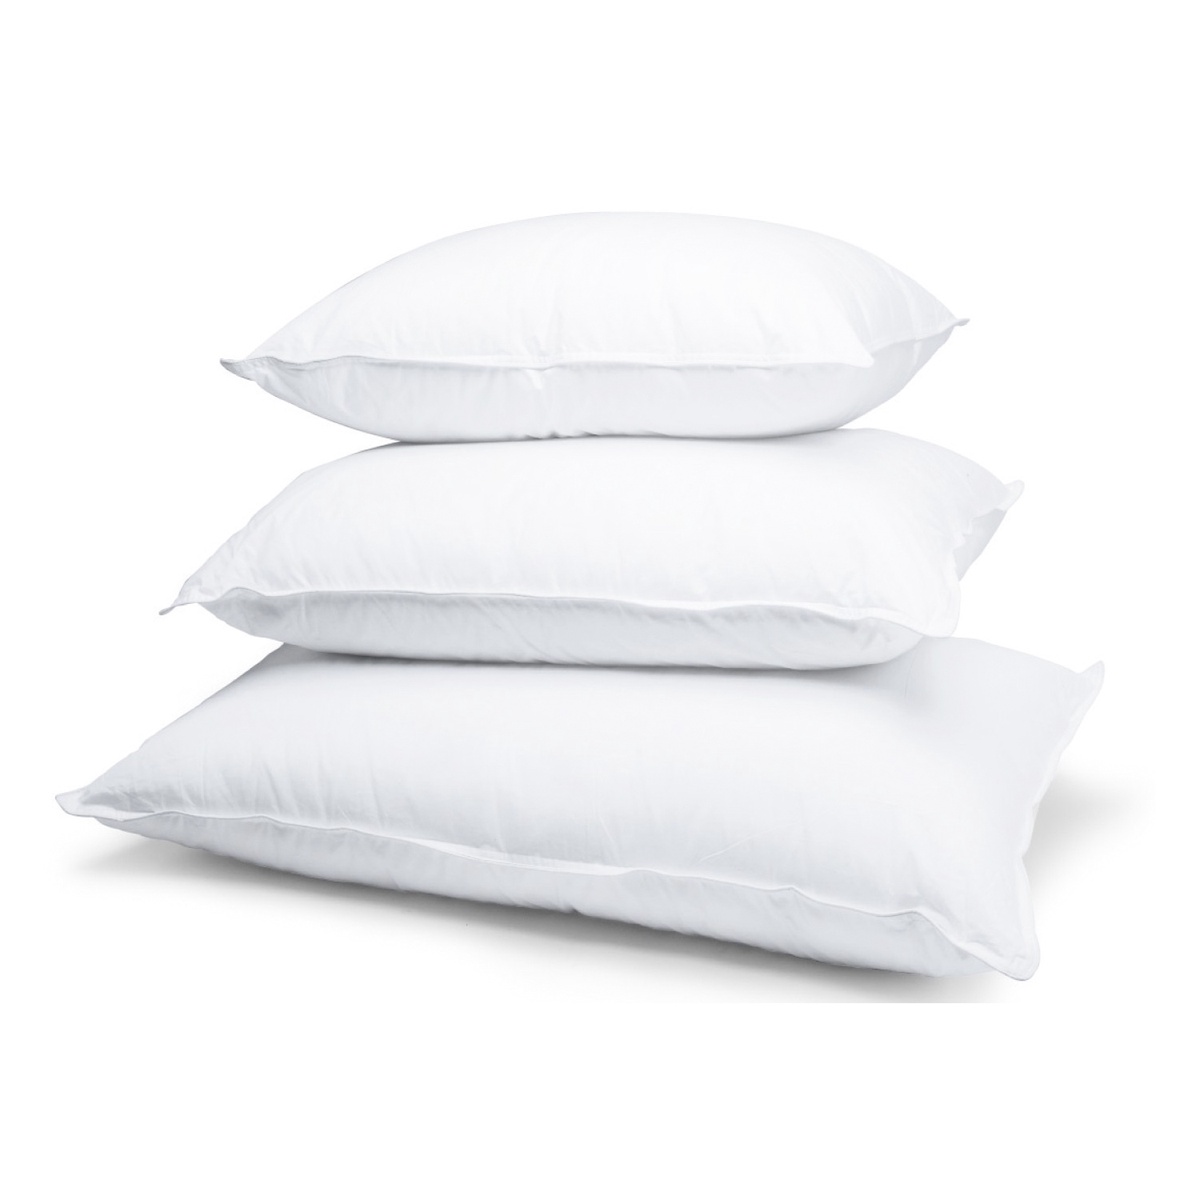 Buy Pillows Online in Australia